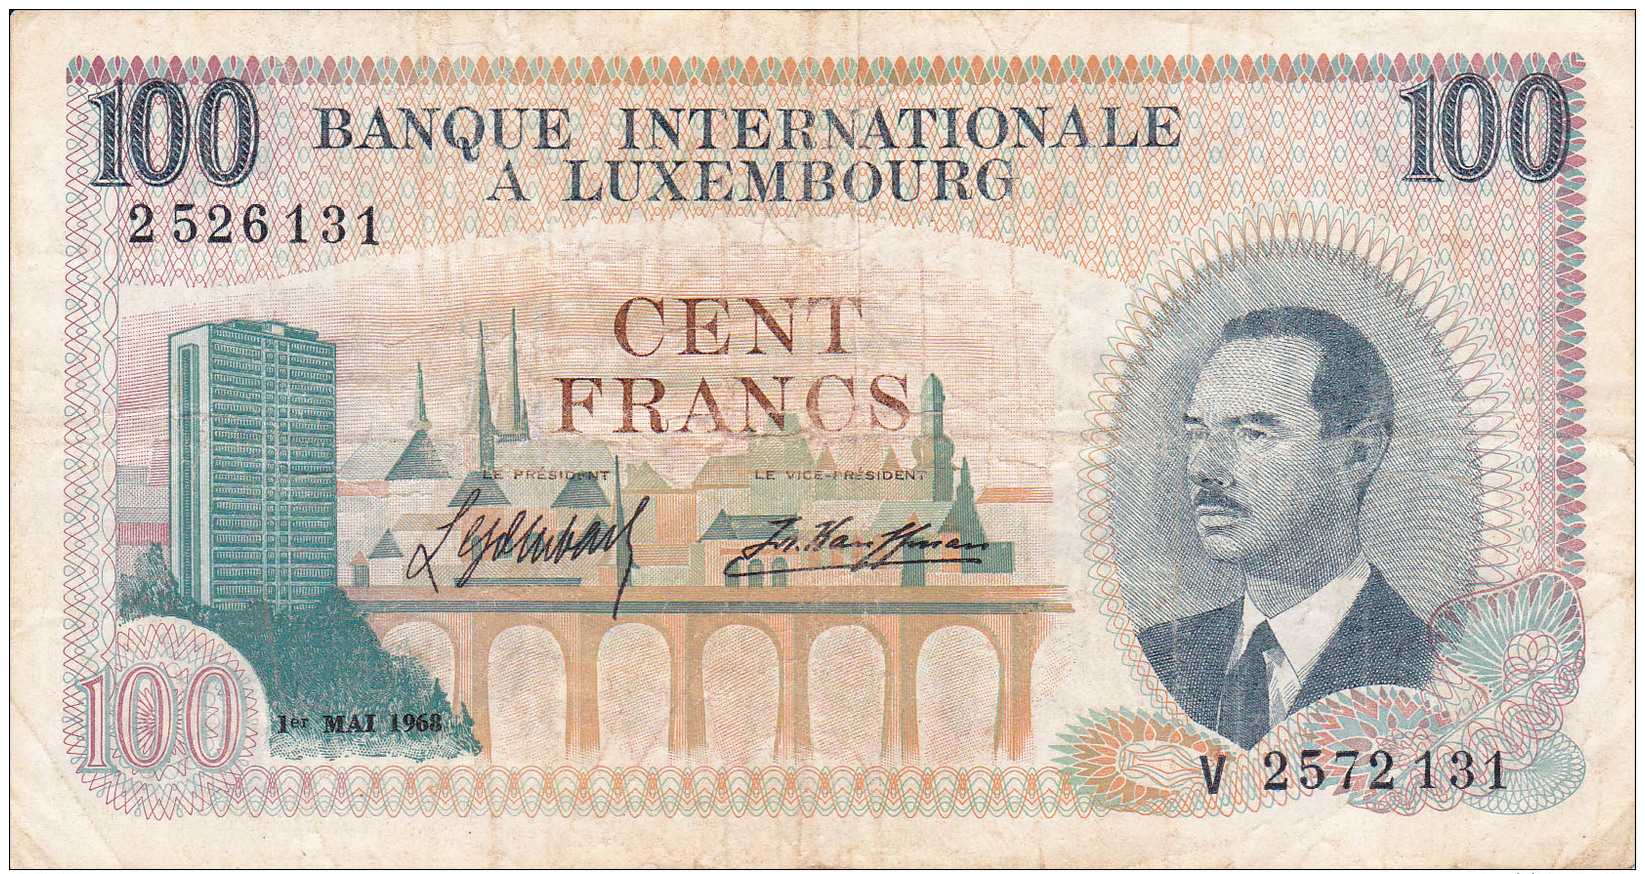 LUXEMBOURG - BILLET DE 100 FRANCS - 1968 - Luxemburg